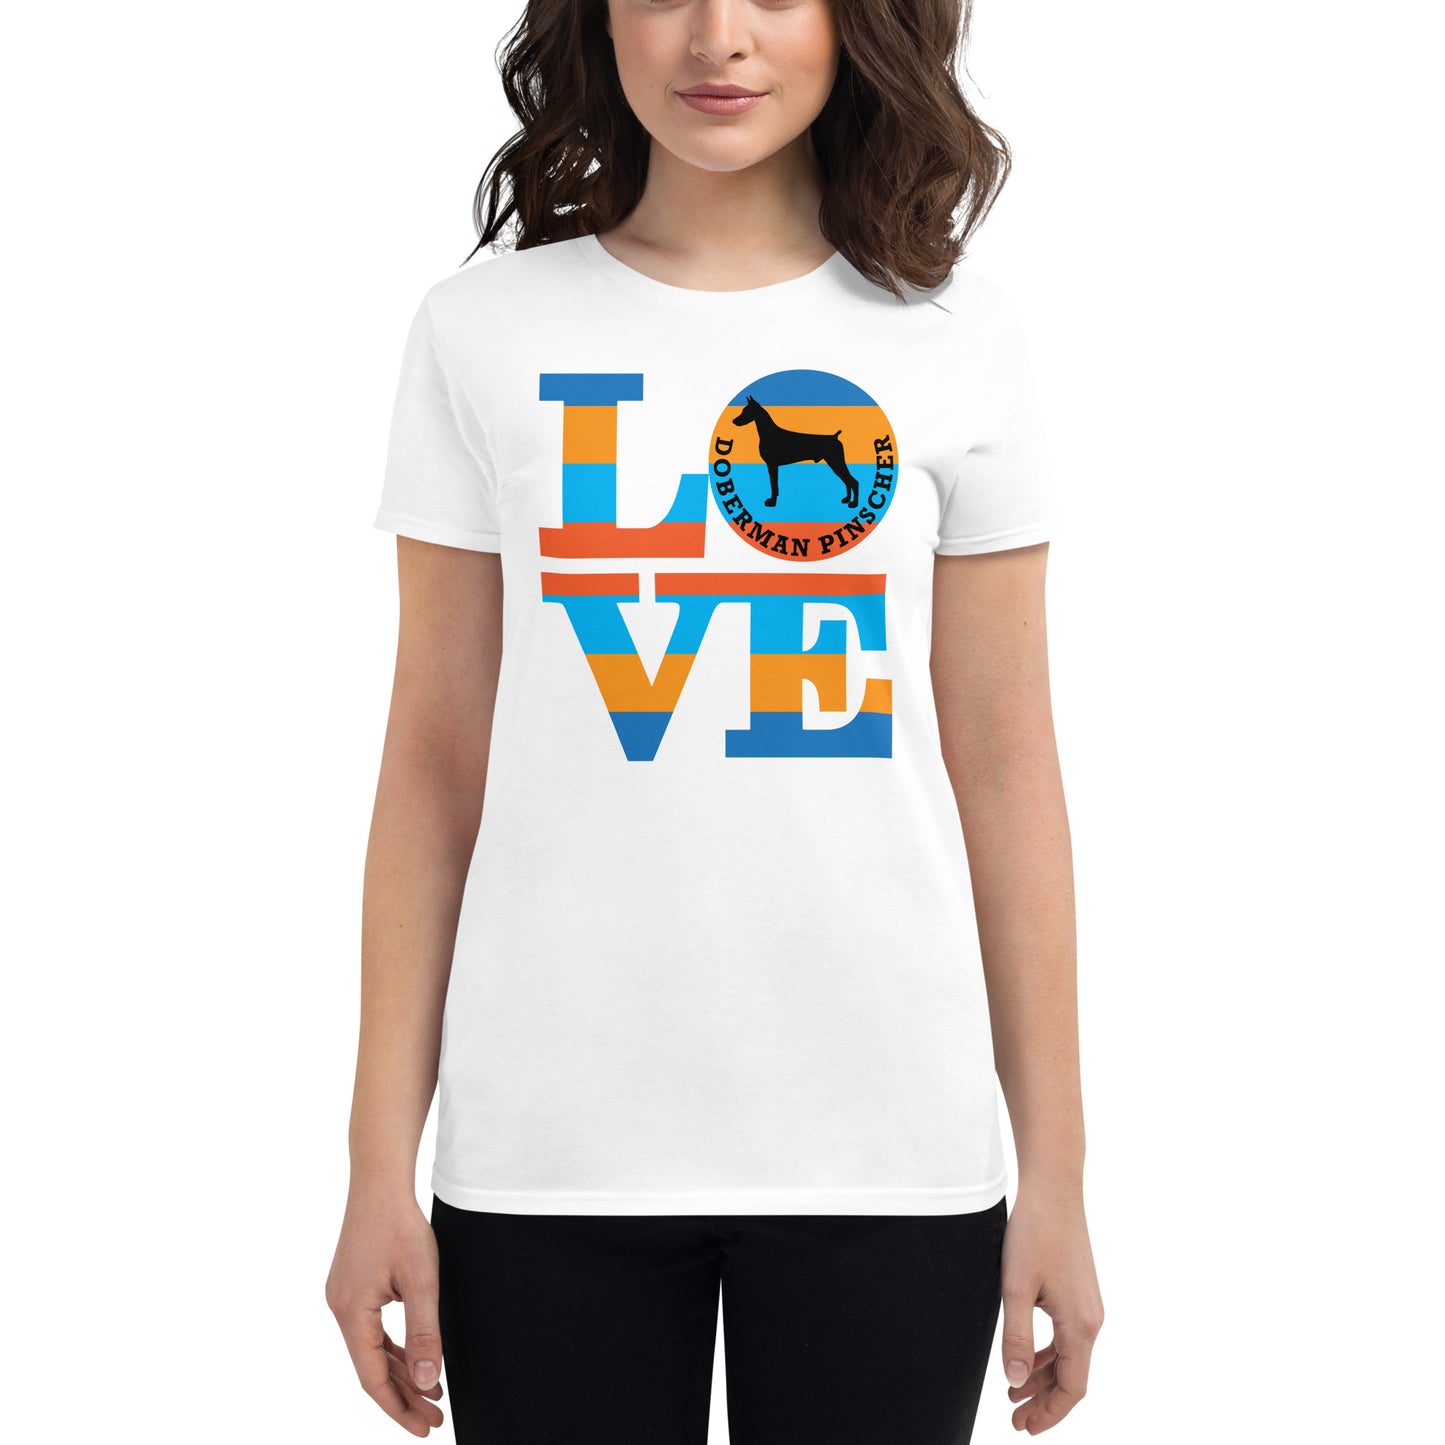 Love Doberman Pinscher Women's short sleeve t-shirt